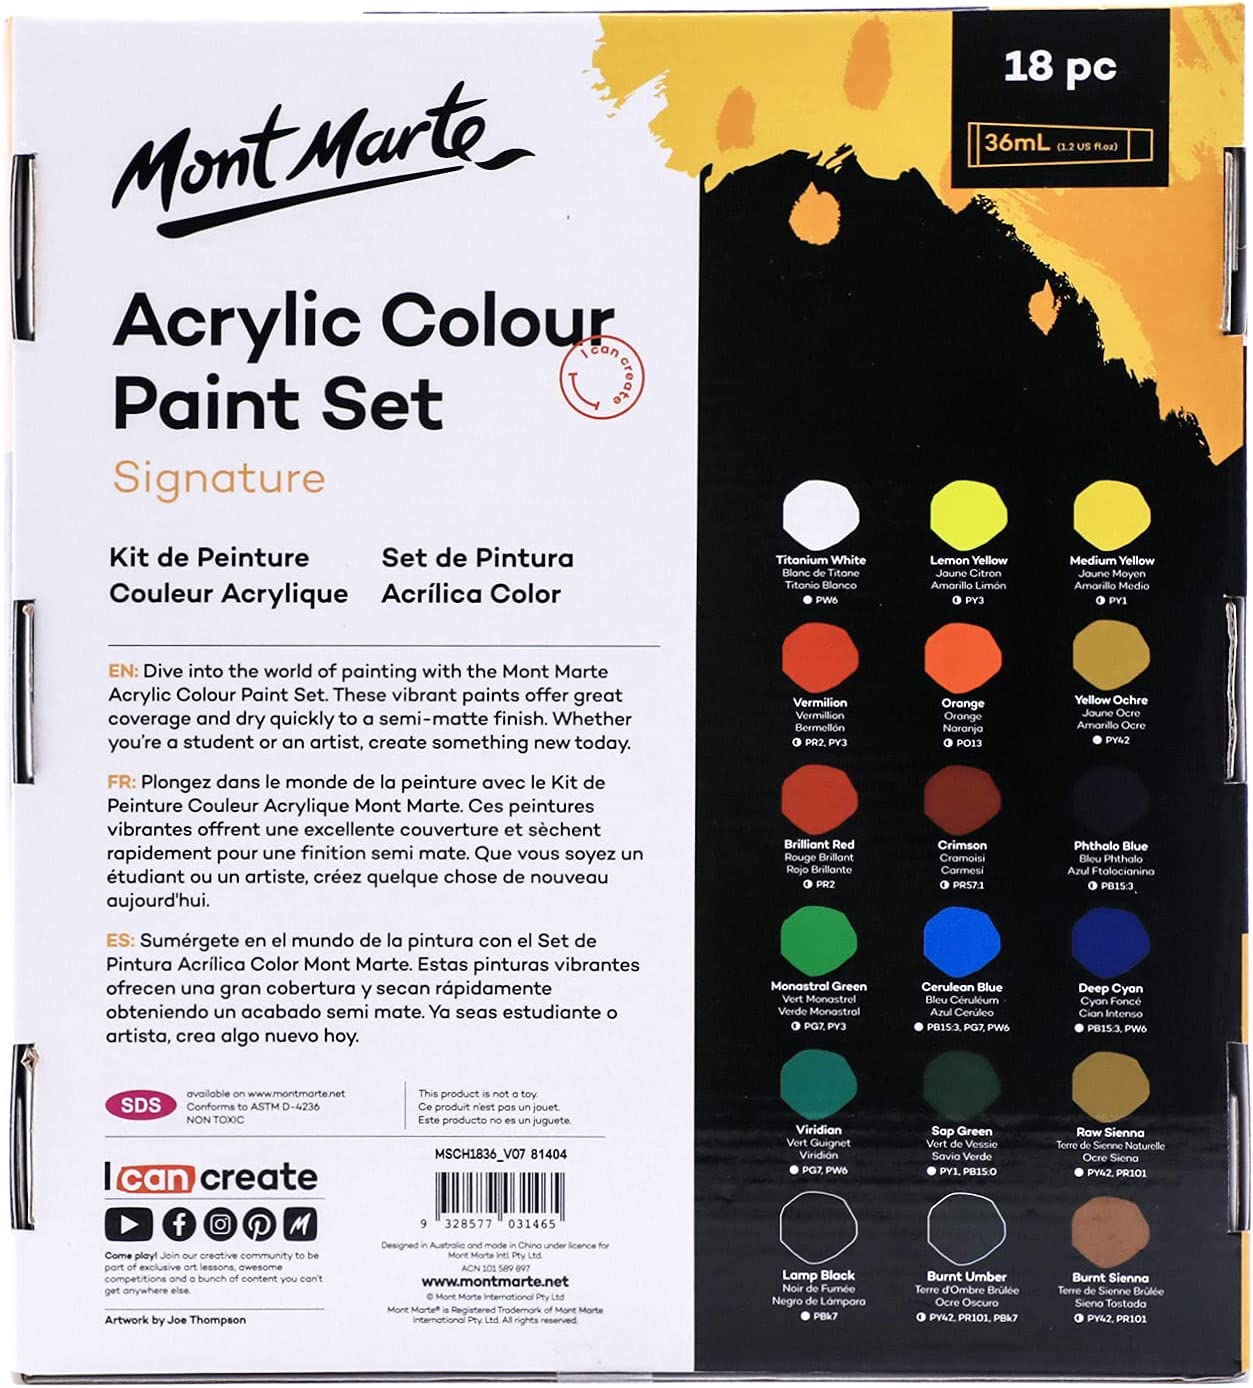 Mont Marte Studio Acrylic Paint Set, 18 Piece, 36ml Tubes.